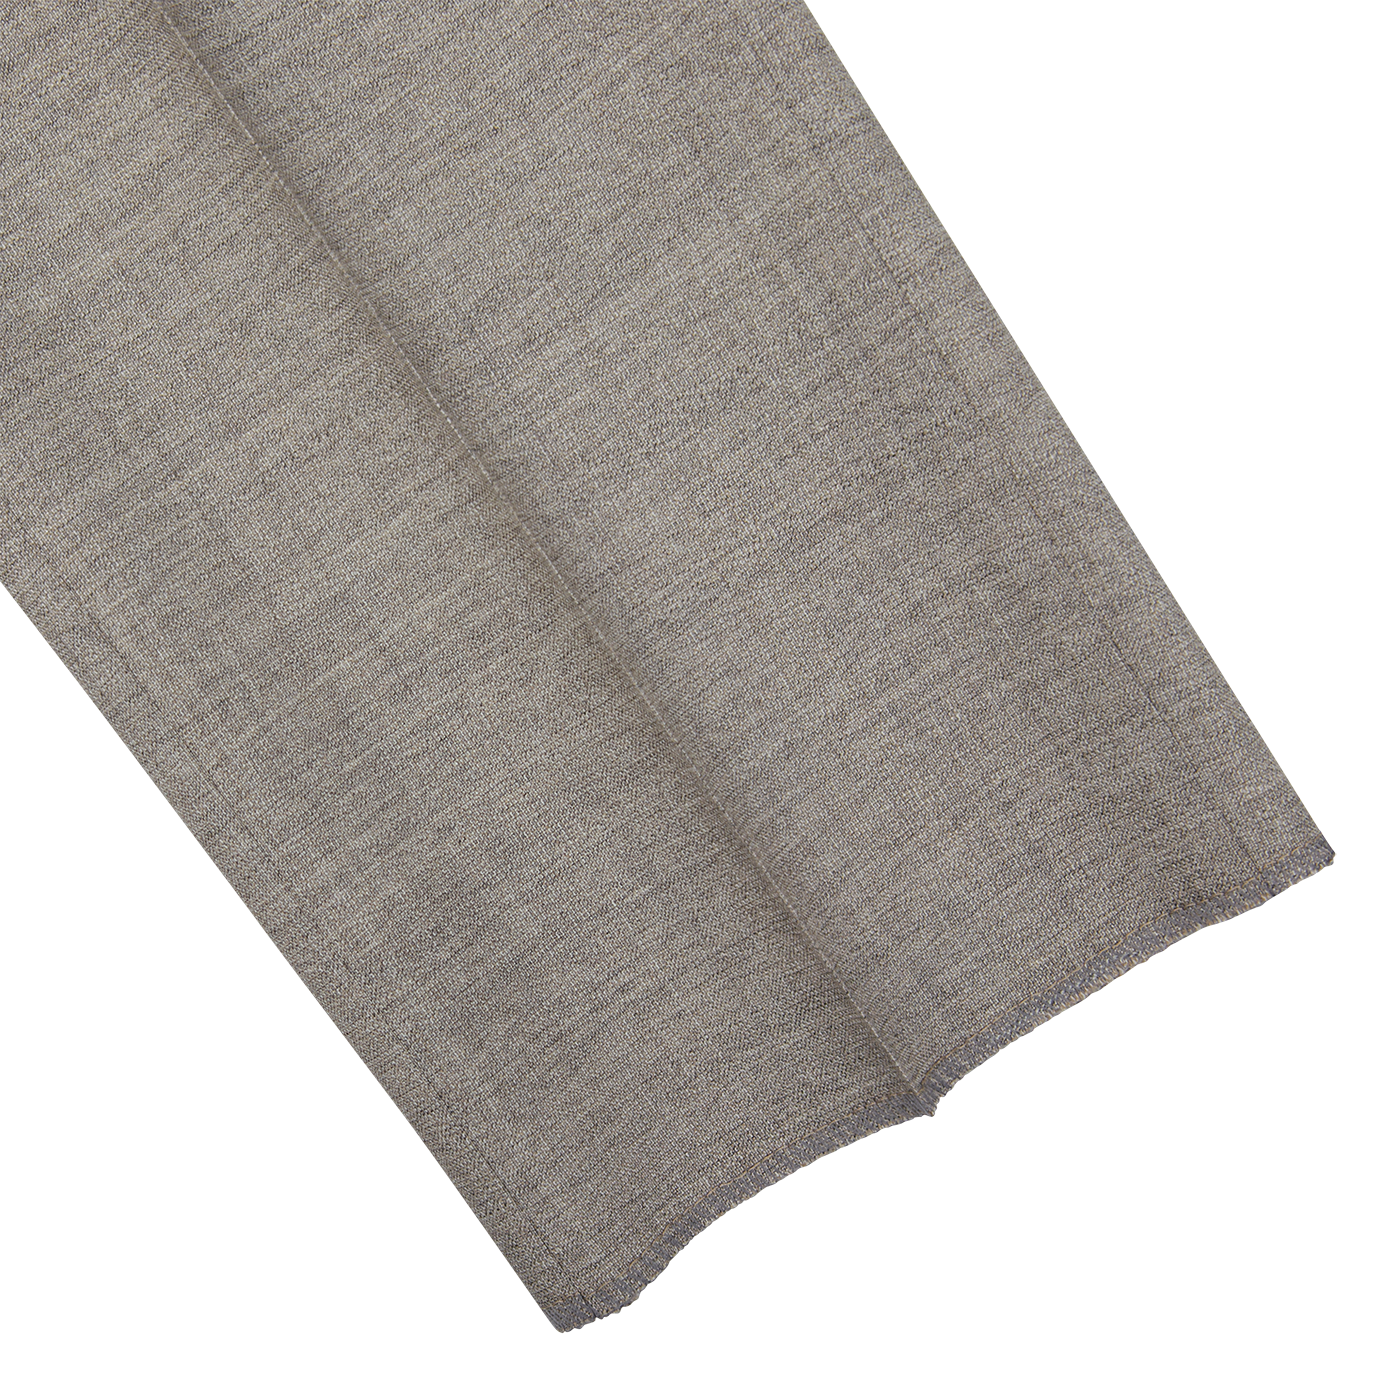 A Berwich high-twist wool grey scarf on a white background.